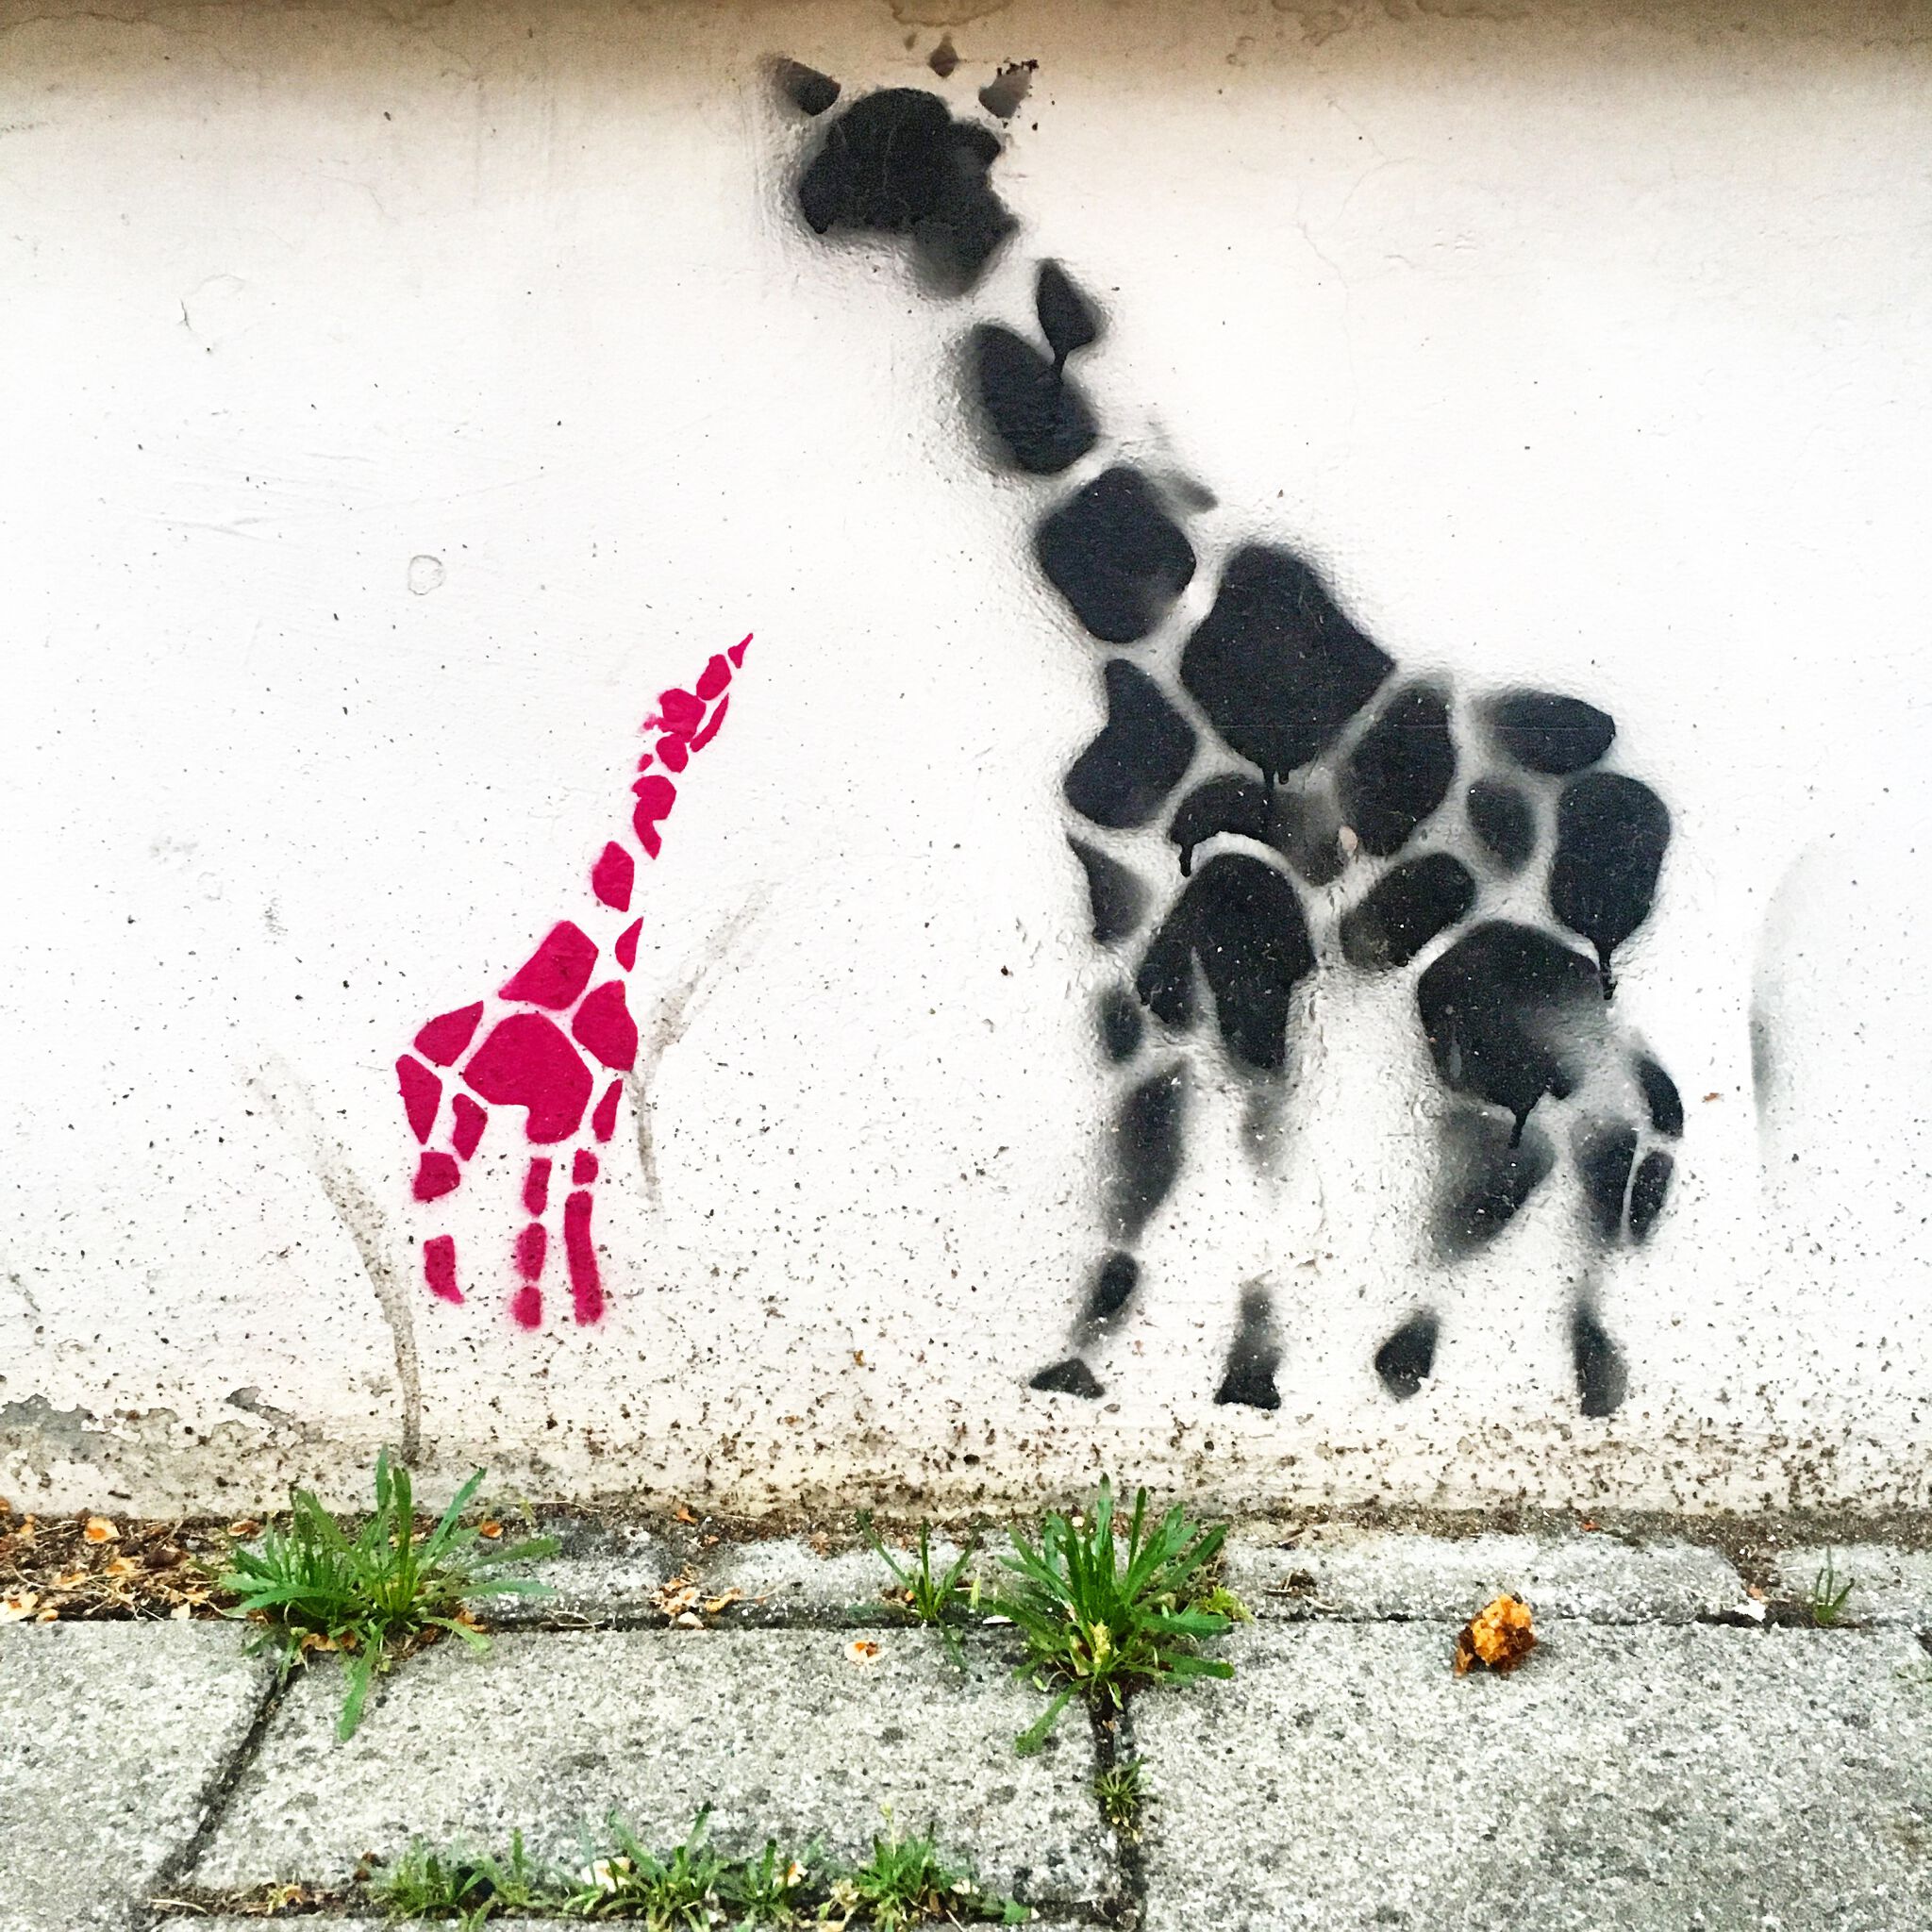 Unknown Artist&mdash;giraffes